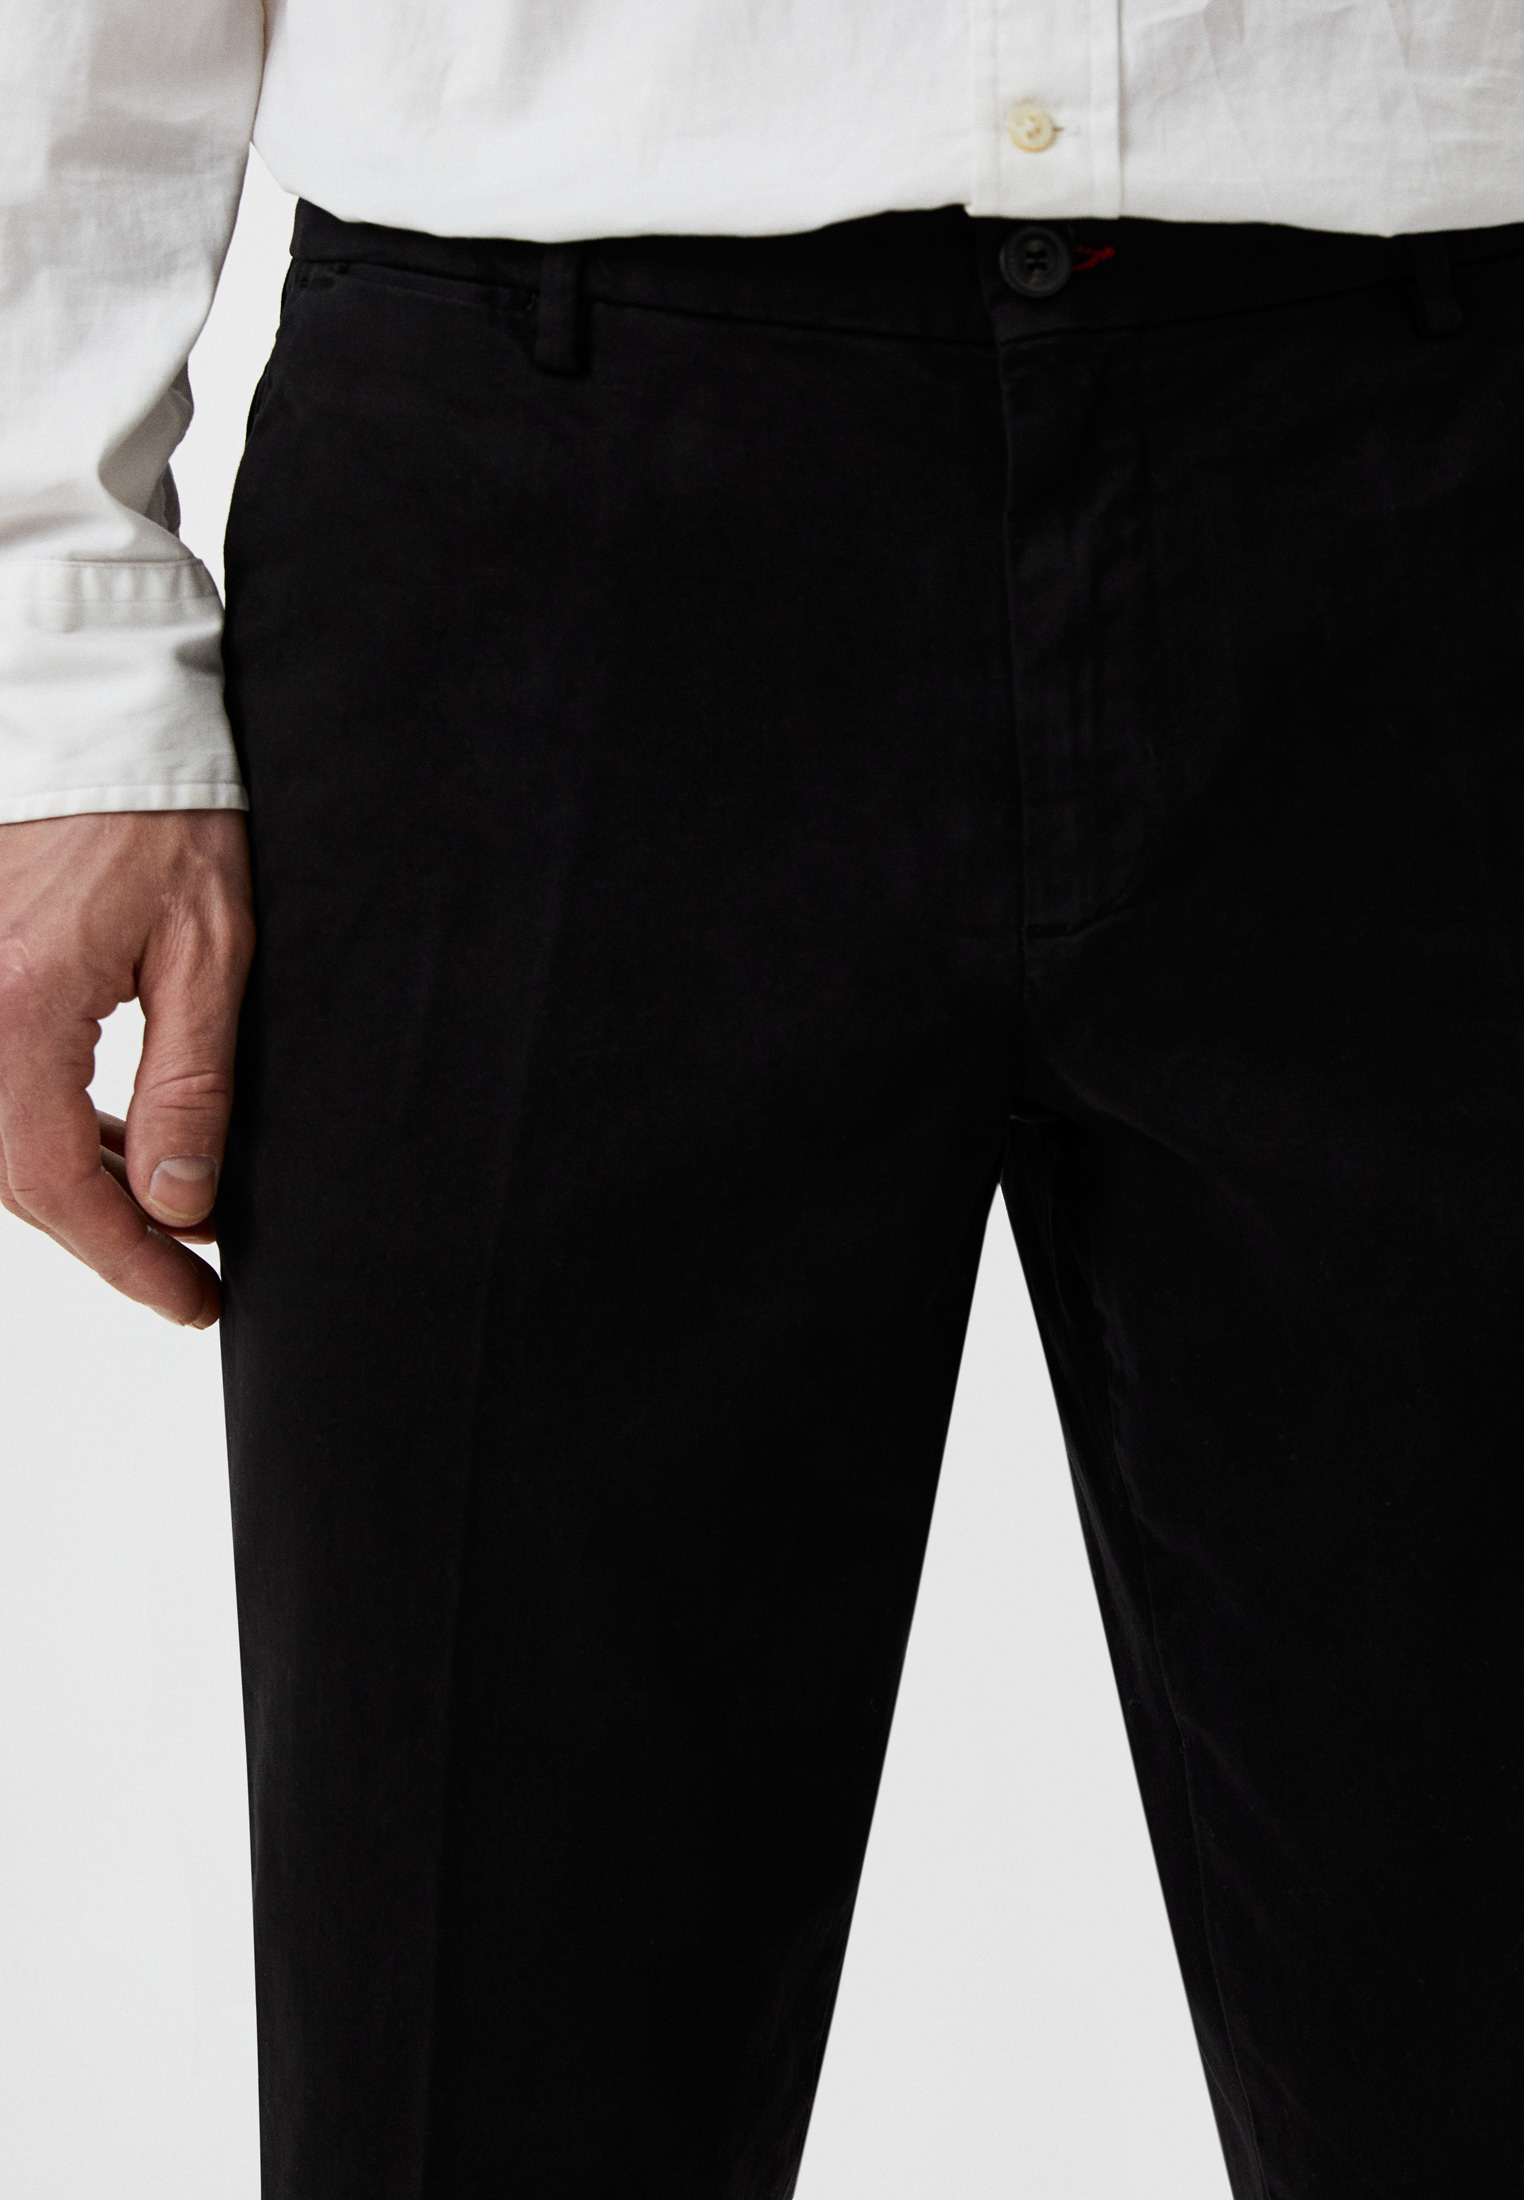 Мужские повседневные брюки TRUSSARDI JEANS (Труссарди Джинс) 52P000001T001721H001: изображение 4